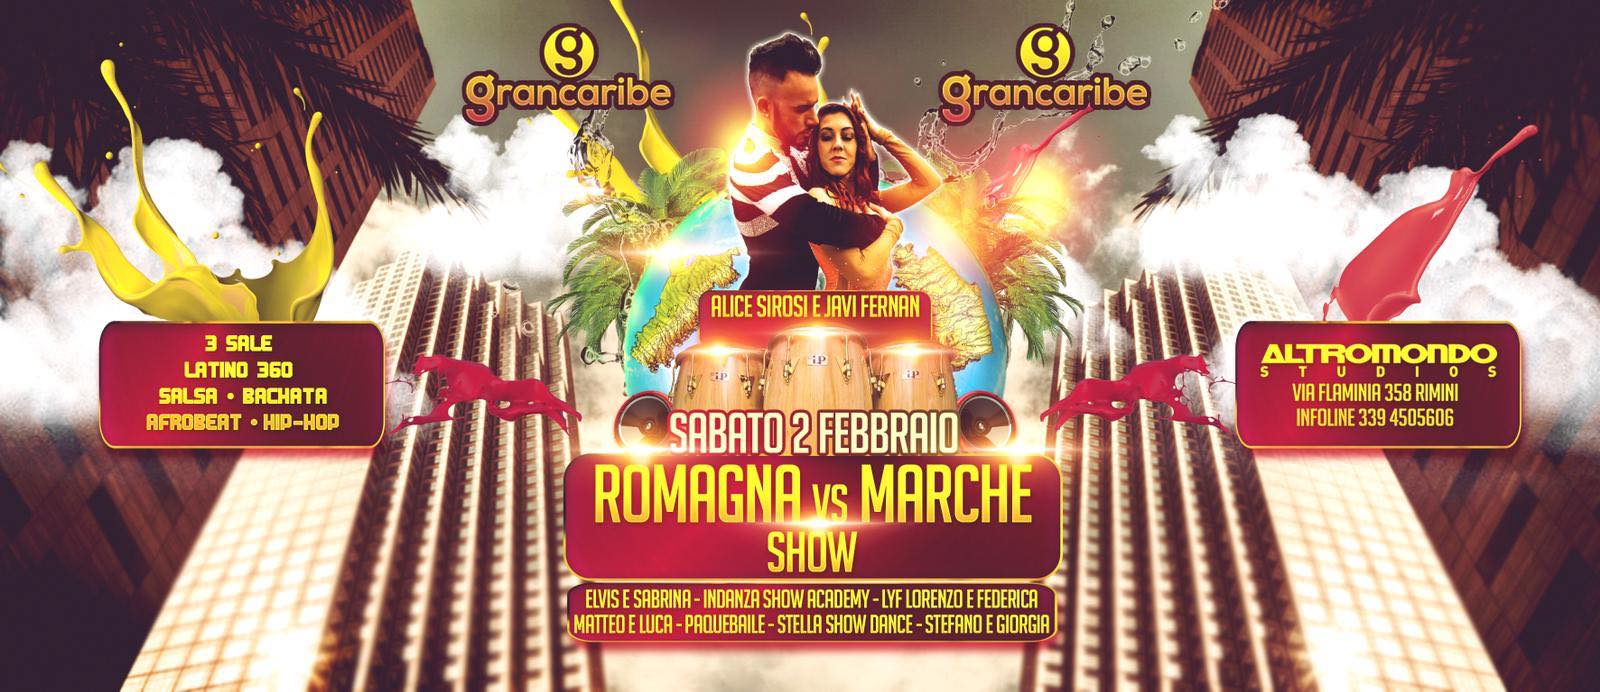 Romagna Vs Marche Show discoteca Altromondo Rimini